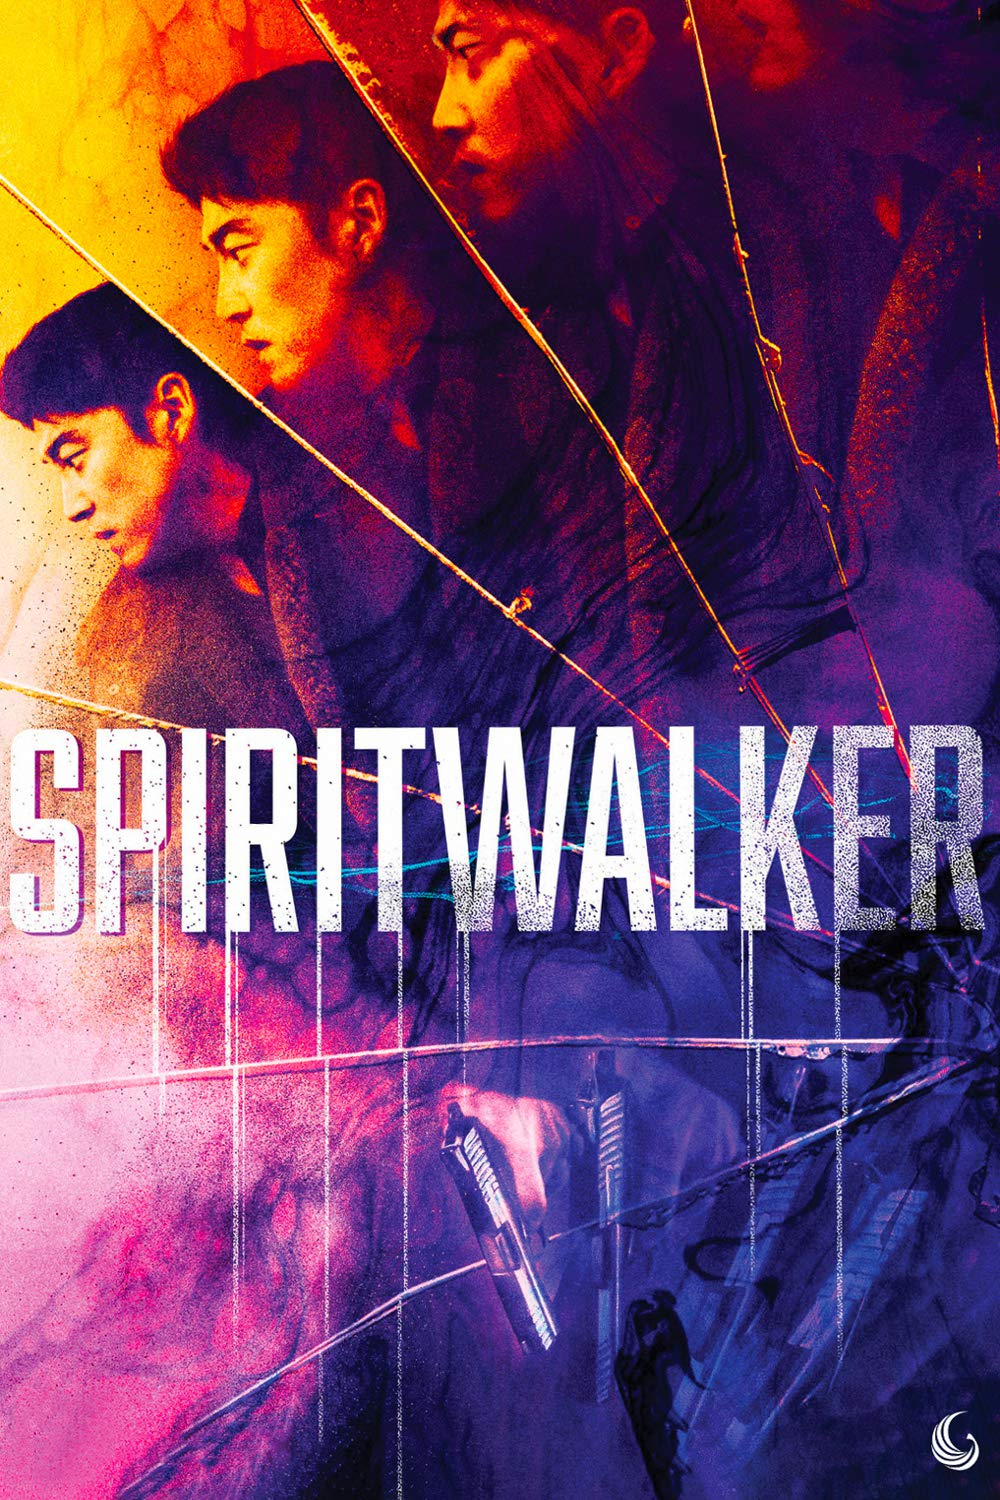 Spiritwalker (2020)